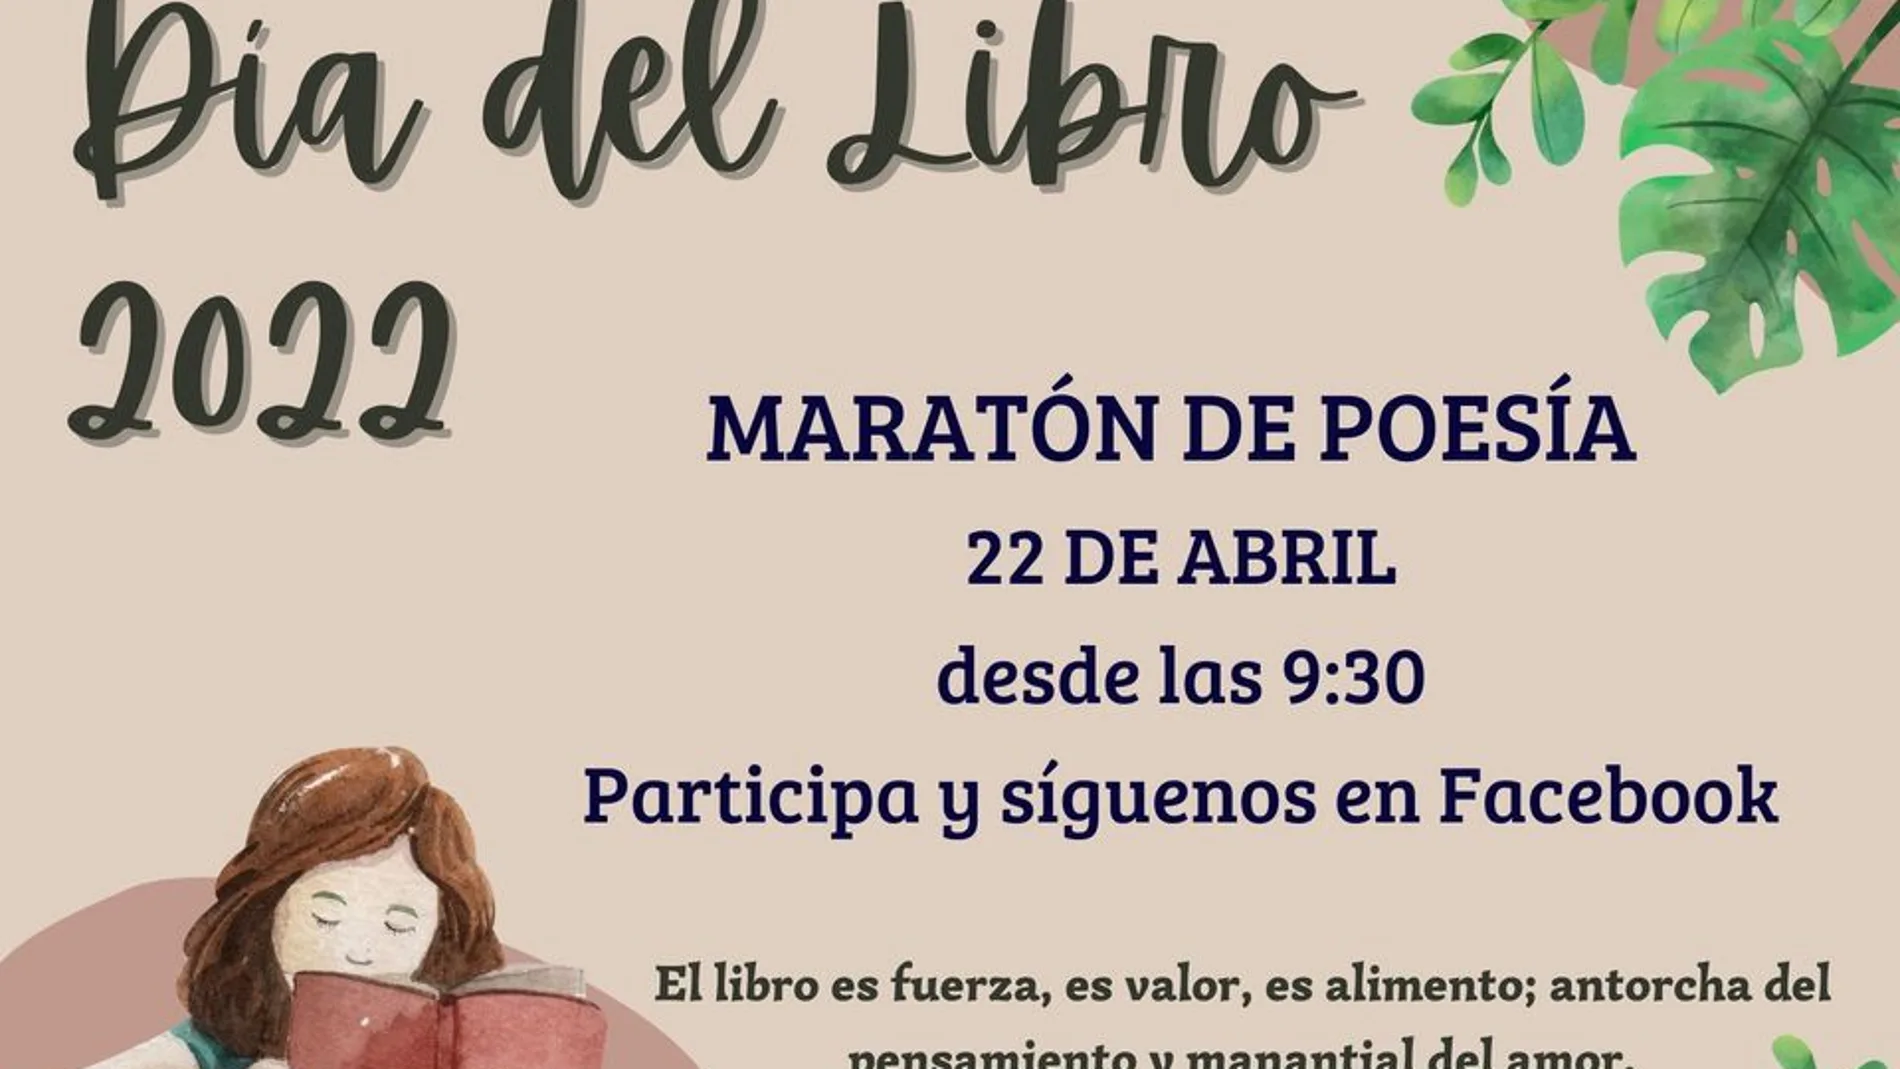 Maratón de Poesía en el Colegio Santa María la Real de las Huelgas de Valladolid